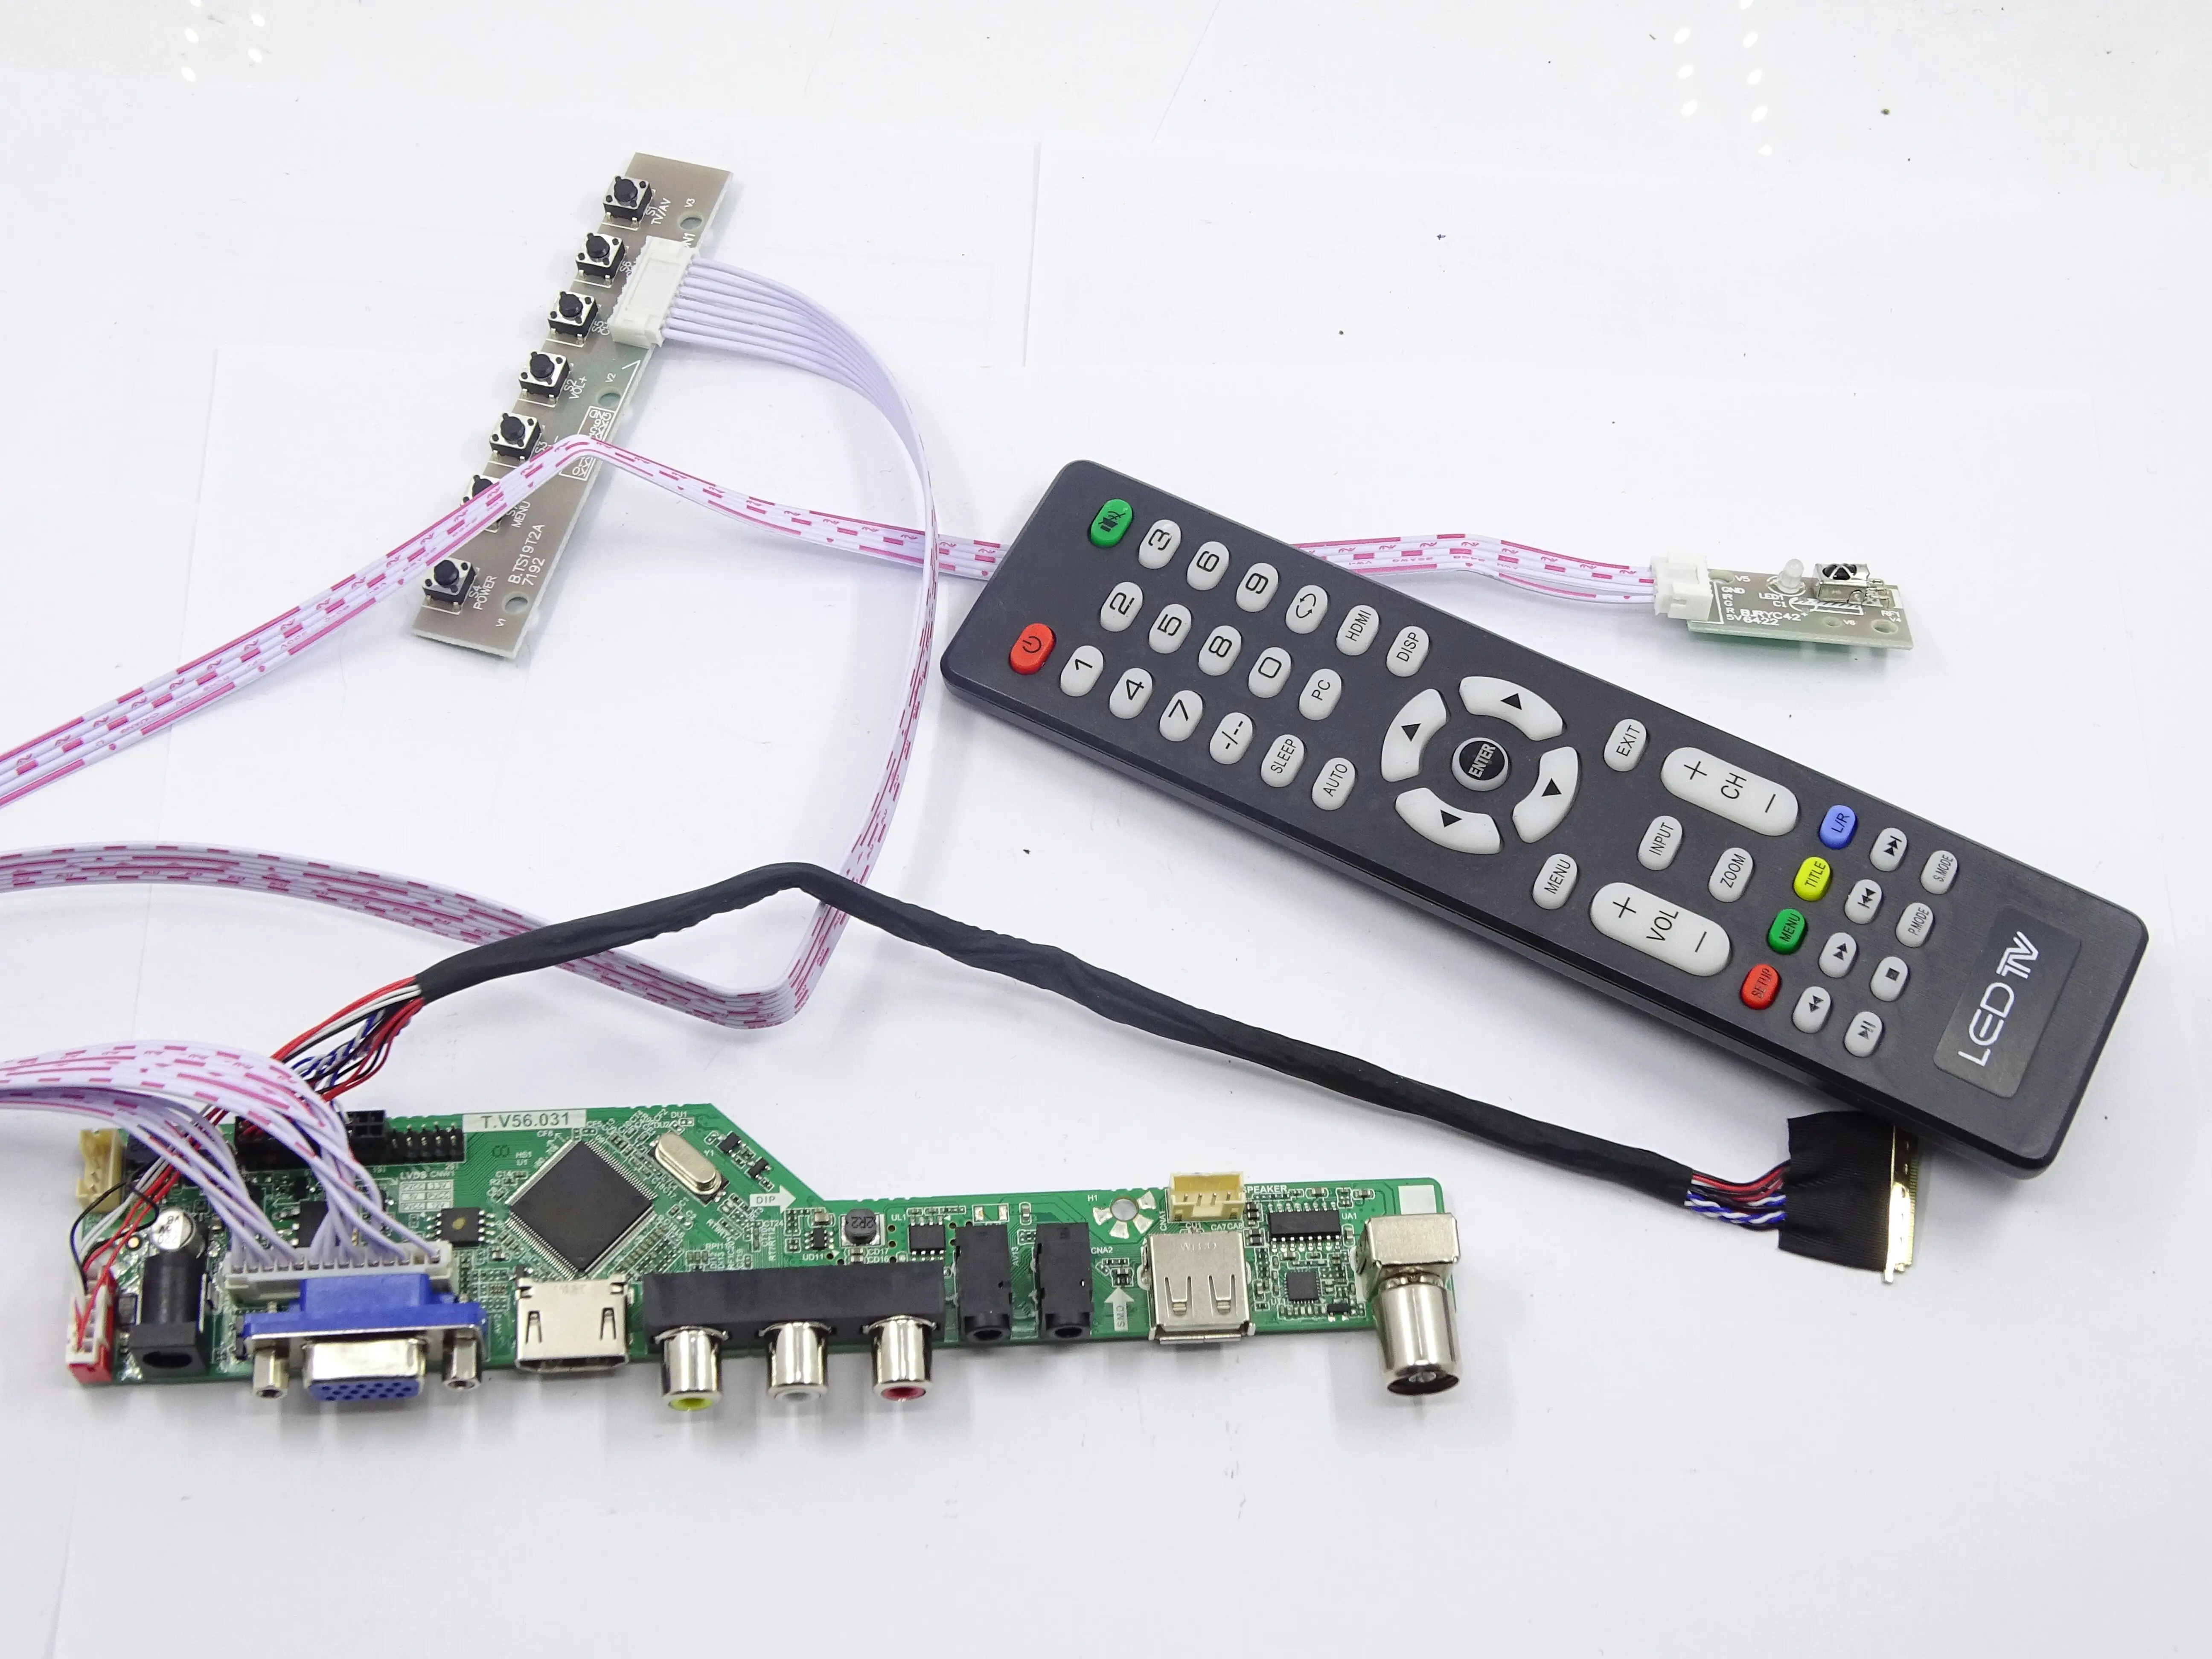 ТВ светодиодный AV VGA HDMI RF контроллер драйвер платы для B156XW02 V2 HW5A 1366*768 15," монитор панель Экран